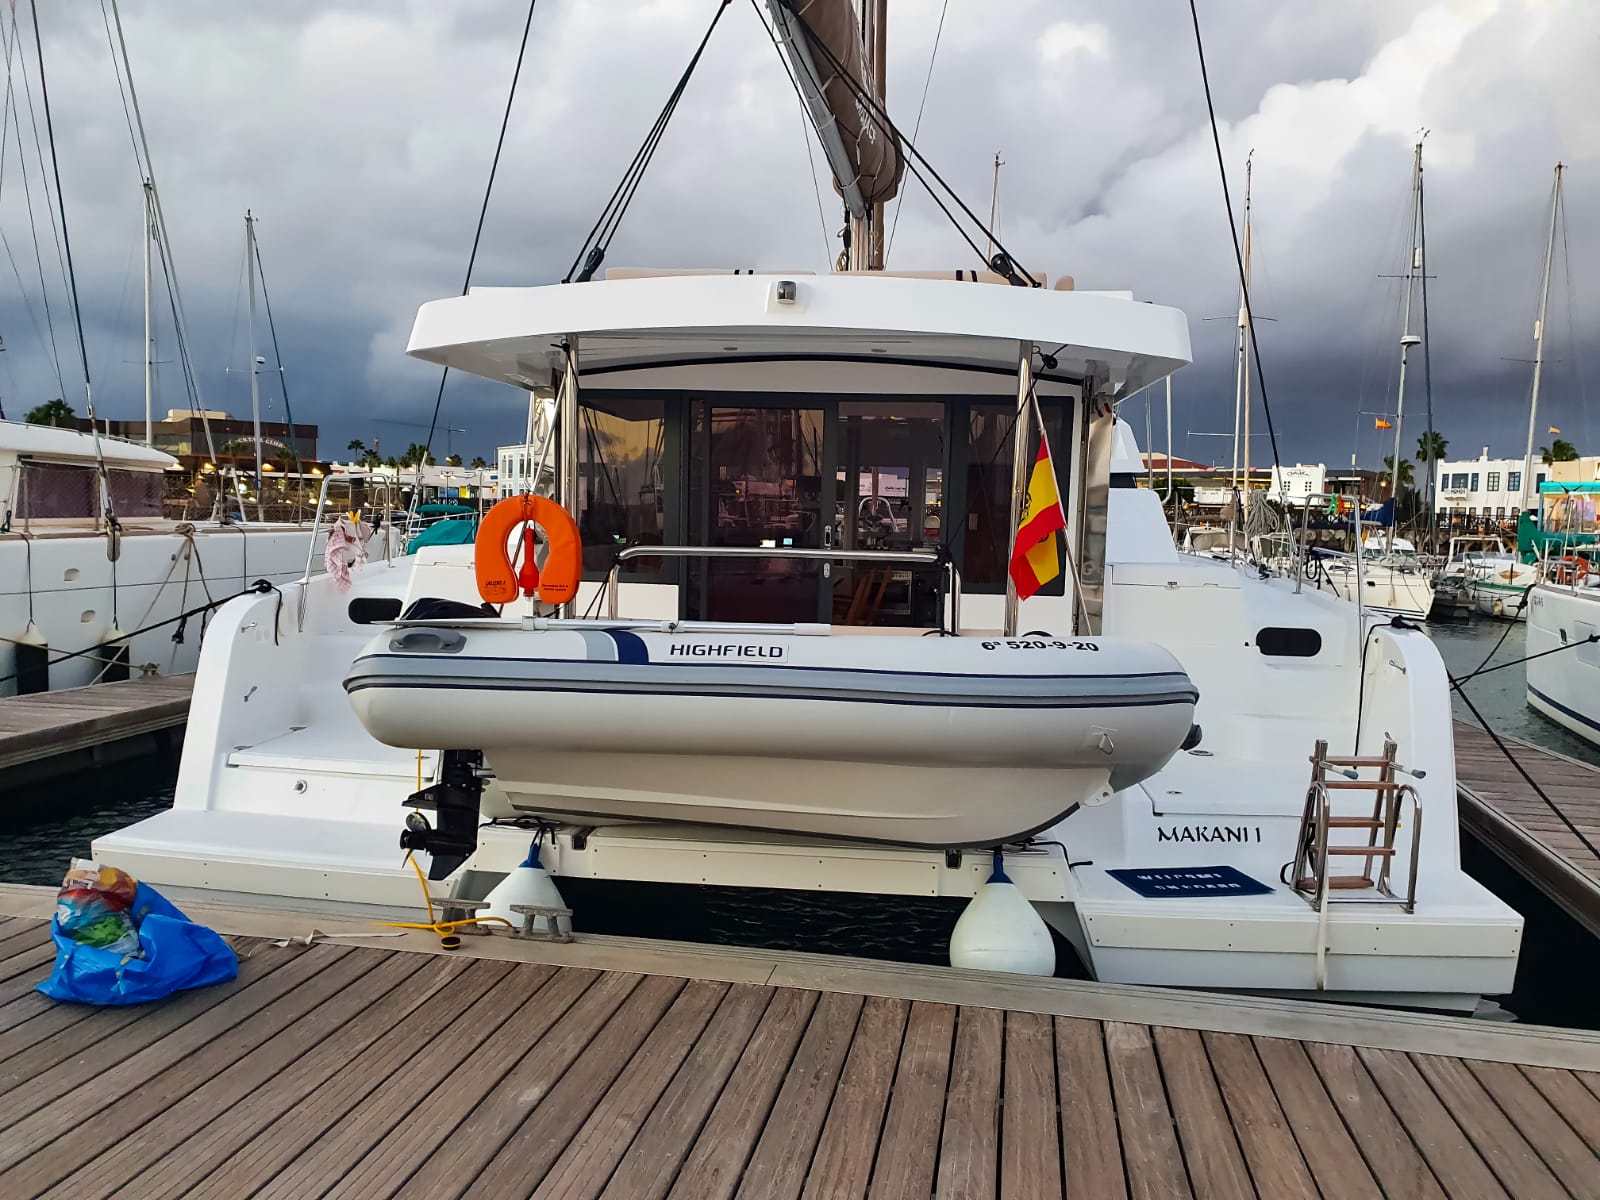 Bali Catspace - Yacht Charter Tenerife & Boat hire in Spain Canary Islands Tenerife Las Galletas Marina del Sur 2